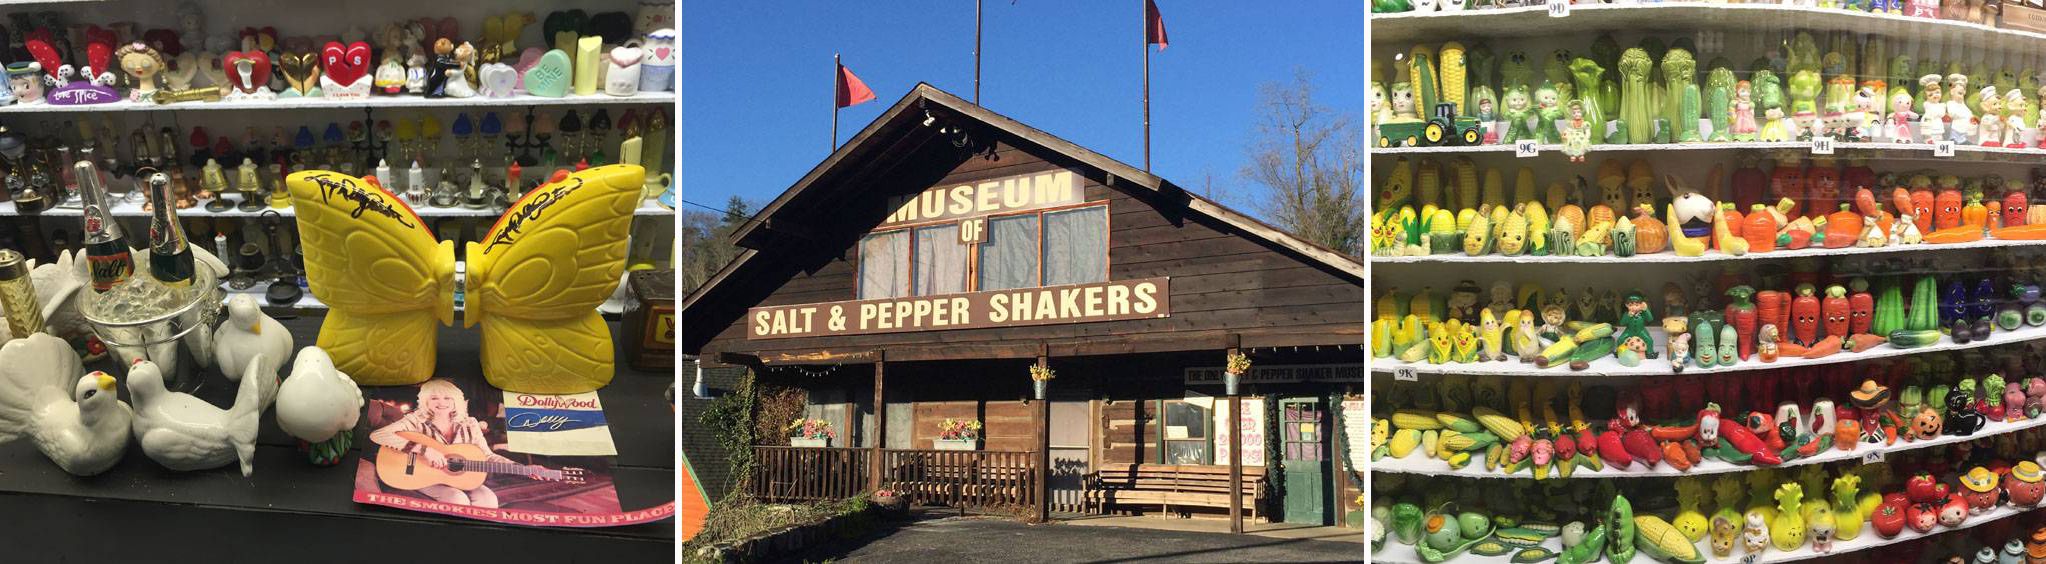 The Salt and Pepper Shaker Museum in Gatlinburg, TN